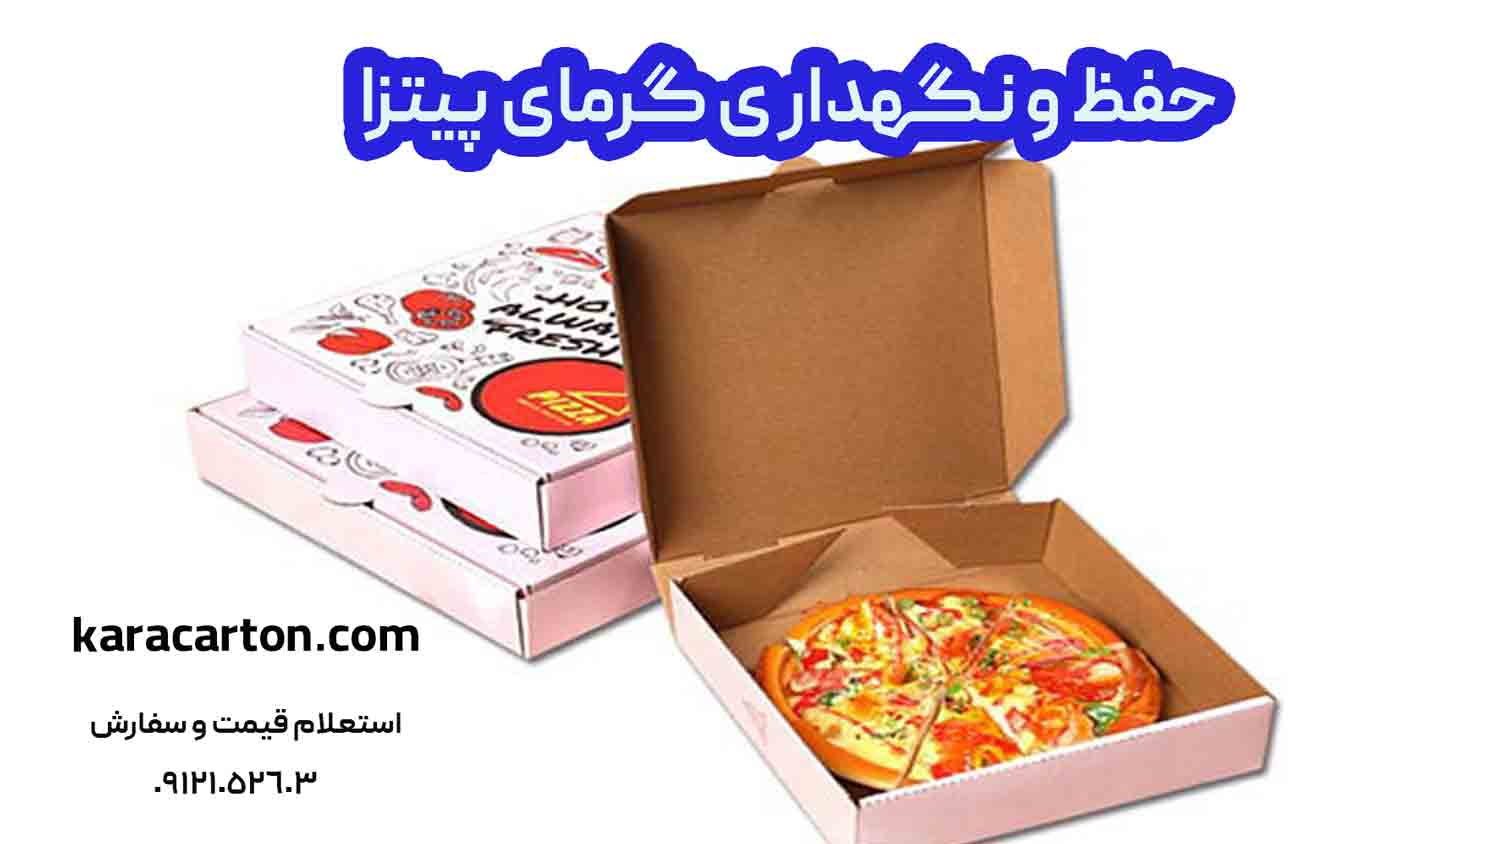 حفظ و نگهداری گرمای پیتزا در جعبه